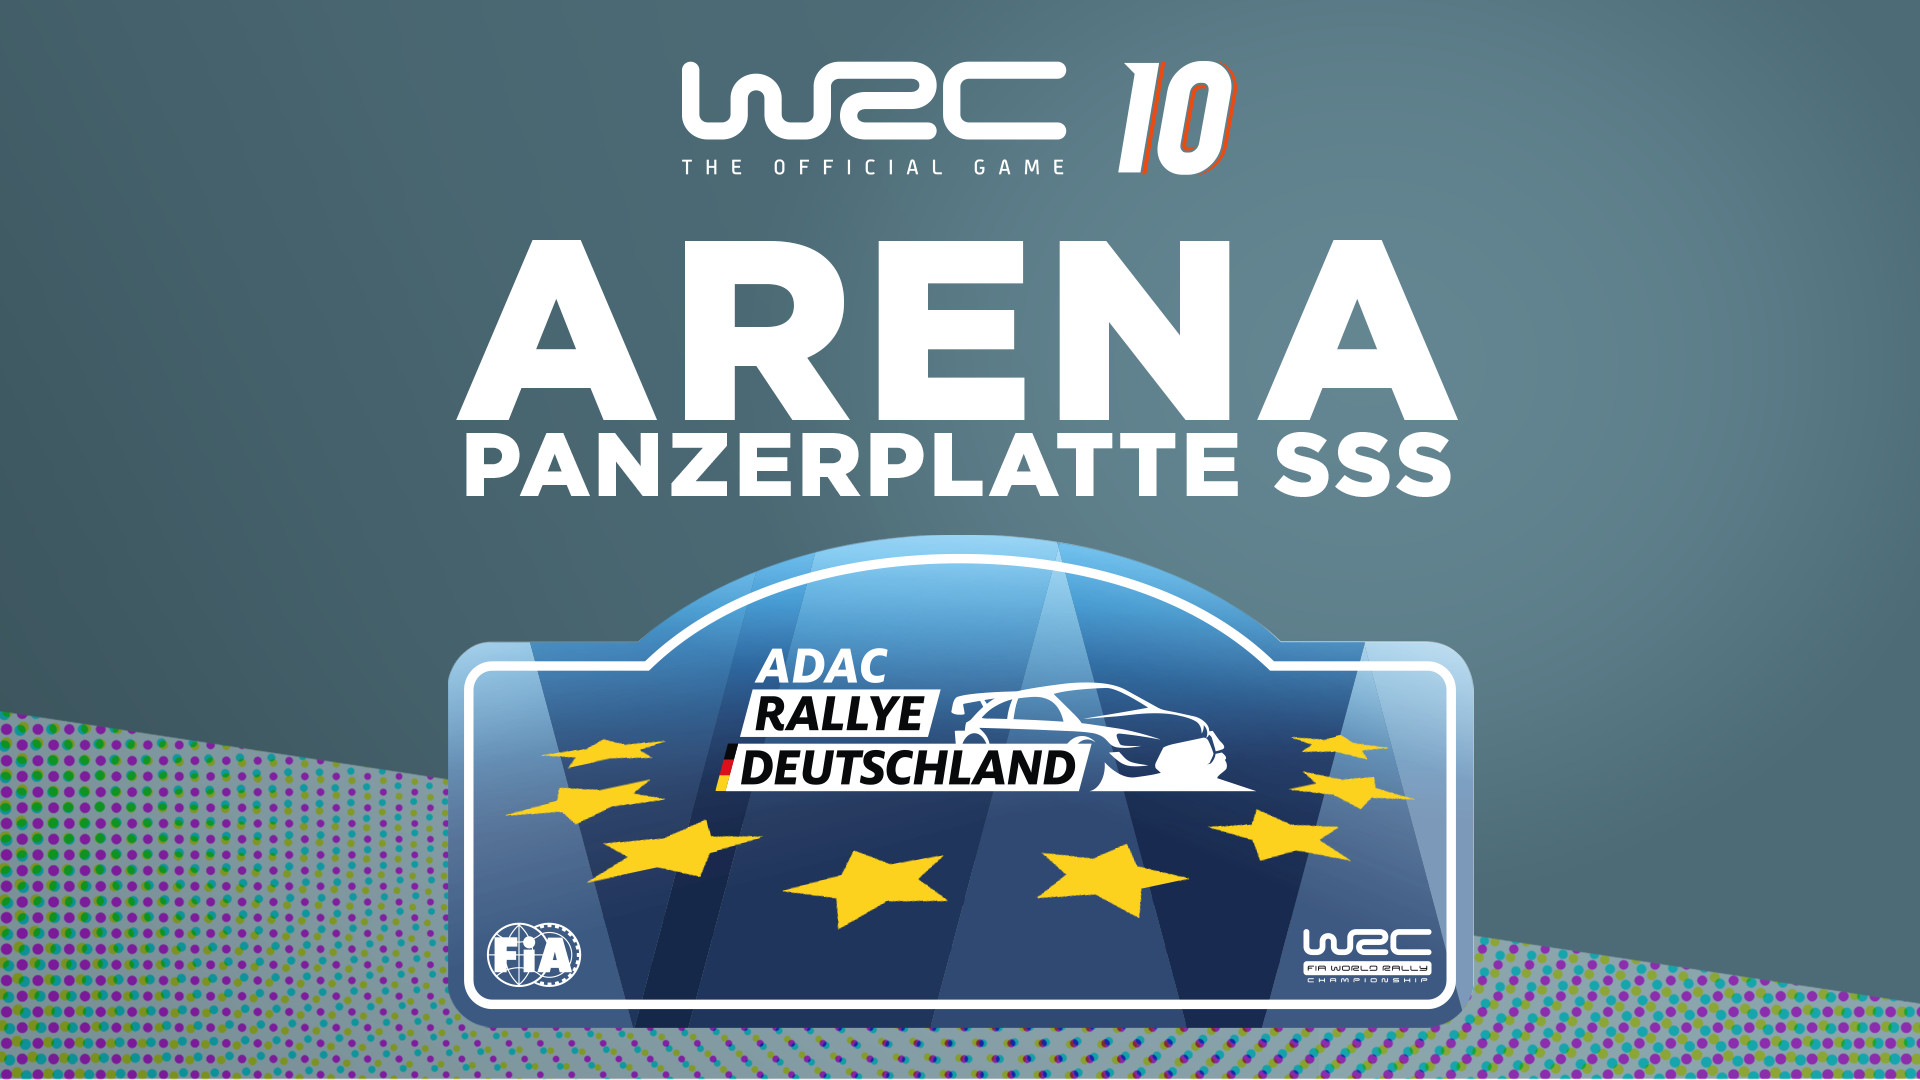 WRC 10 - Arena Panzerplatte SSS DLC Steam CD Key $4.51